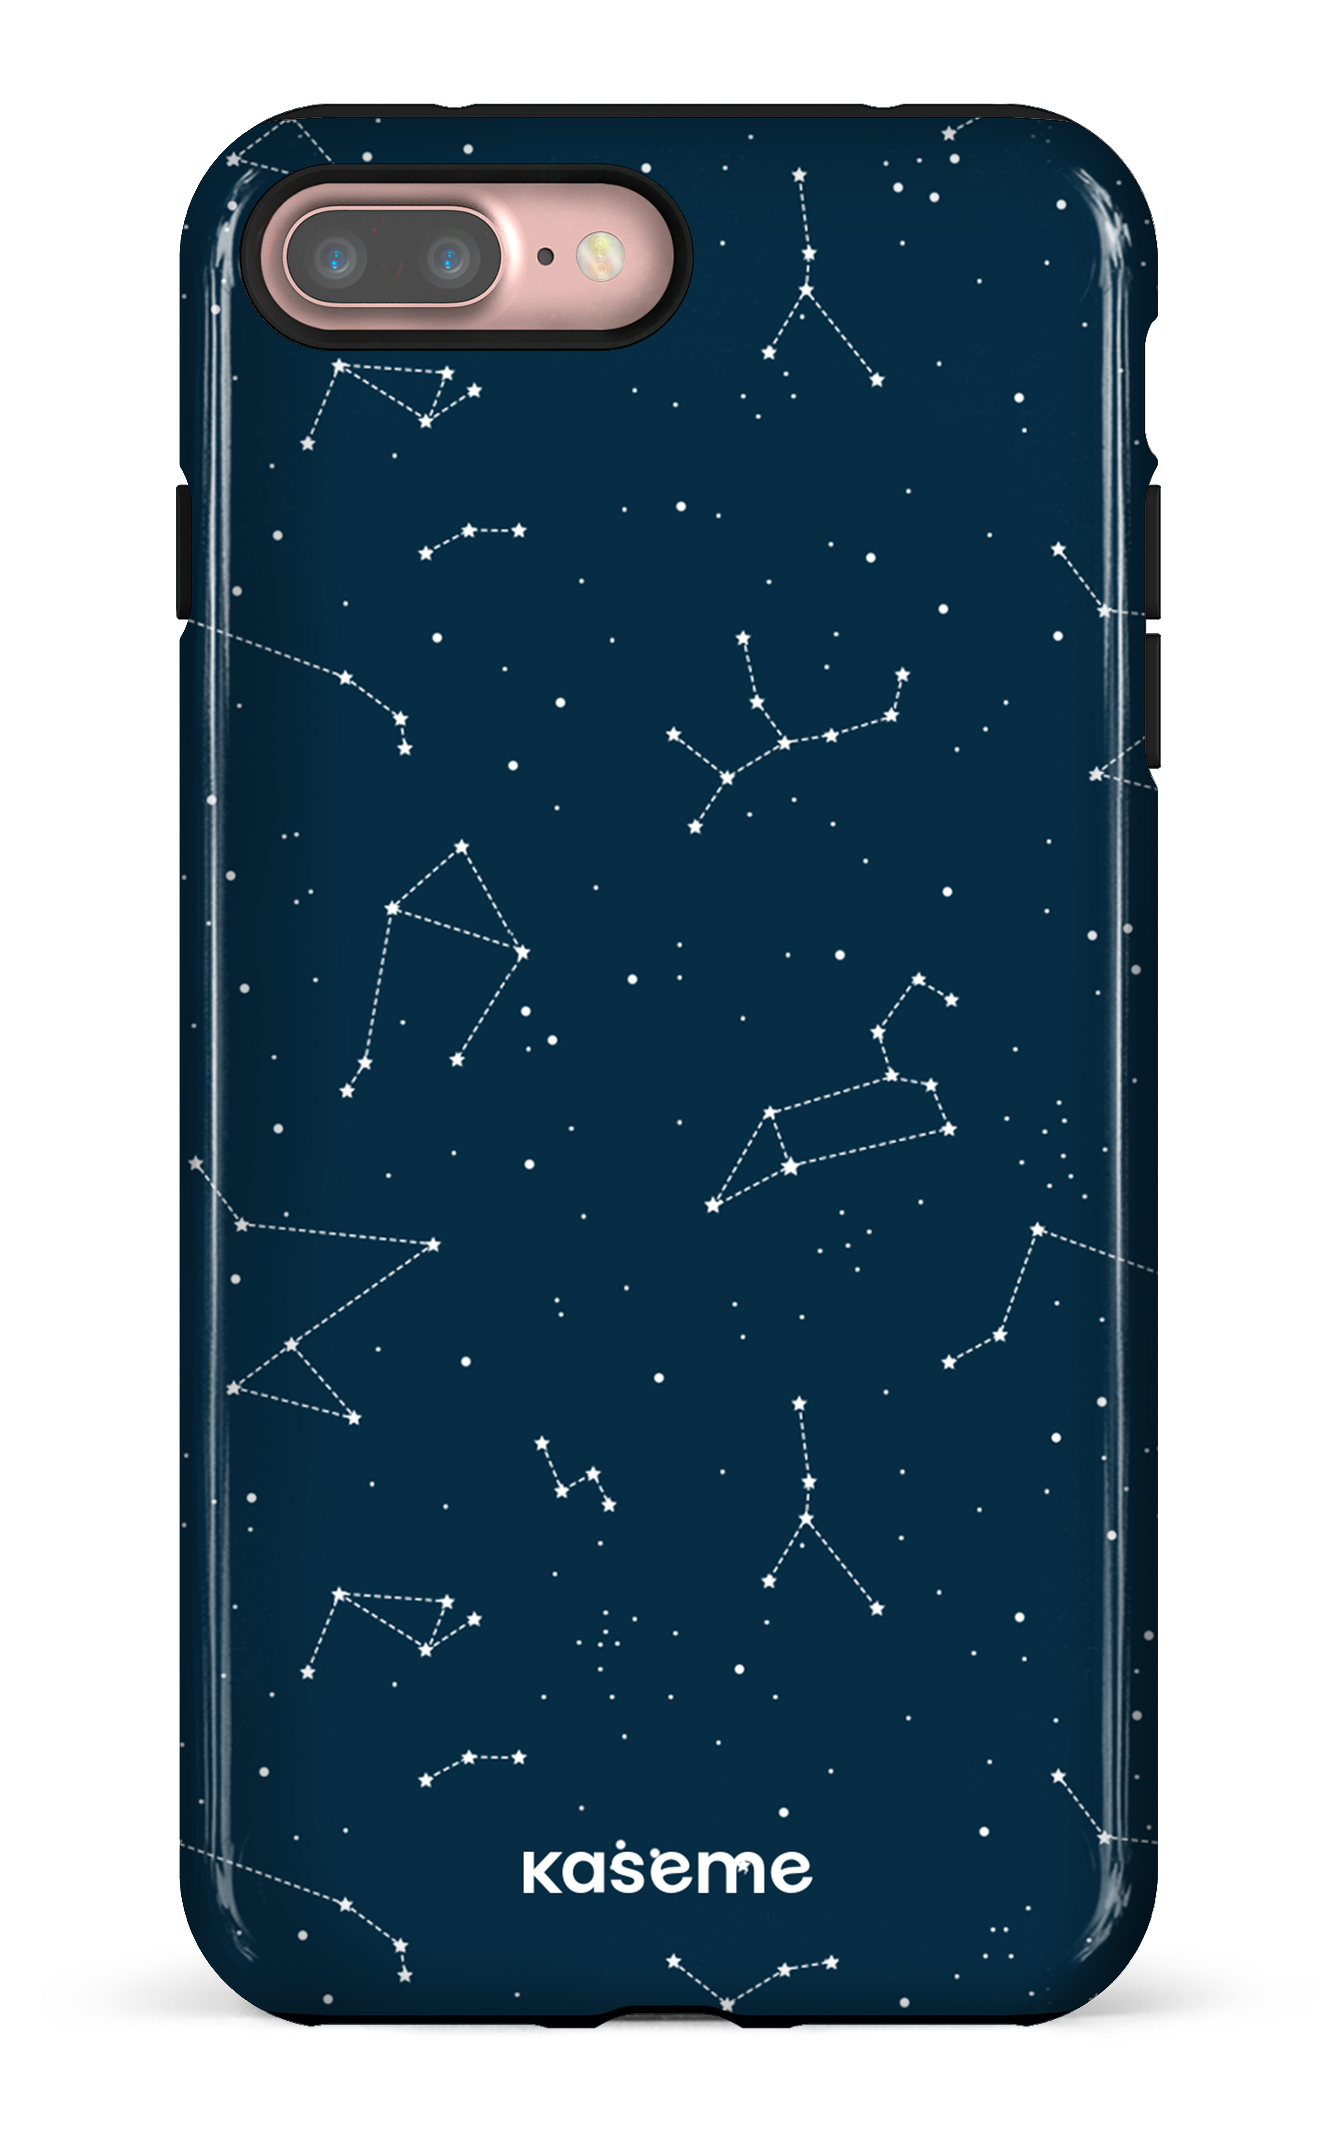 Cosmos - iPhone 7 Plus